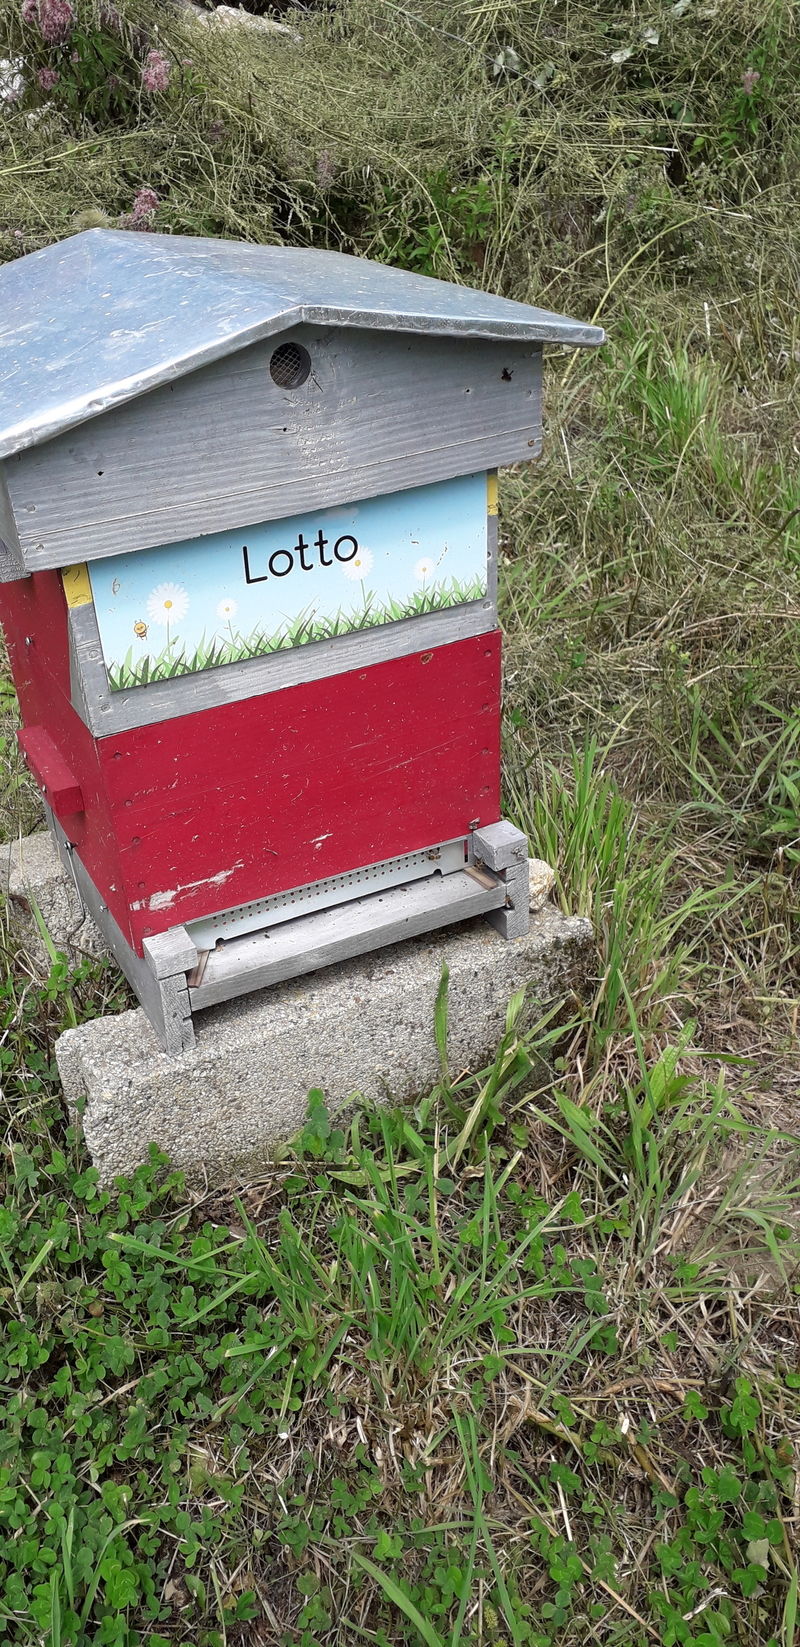 La ruche Lotto